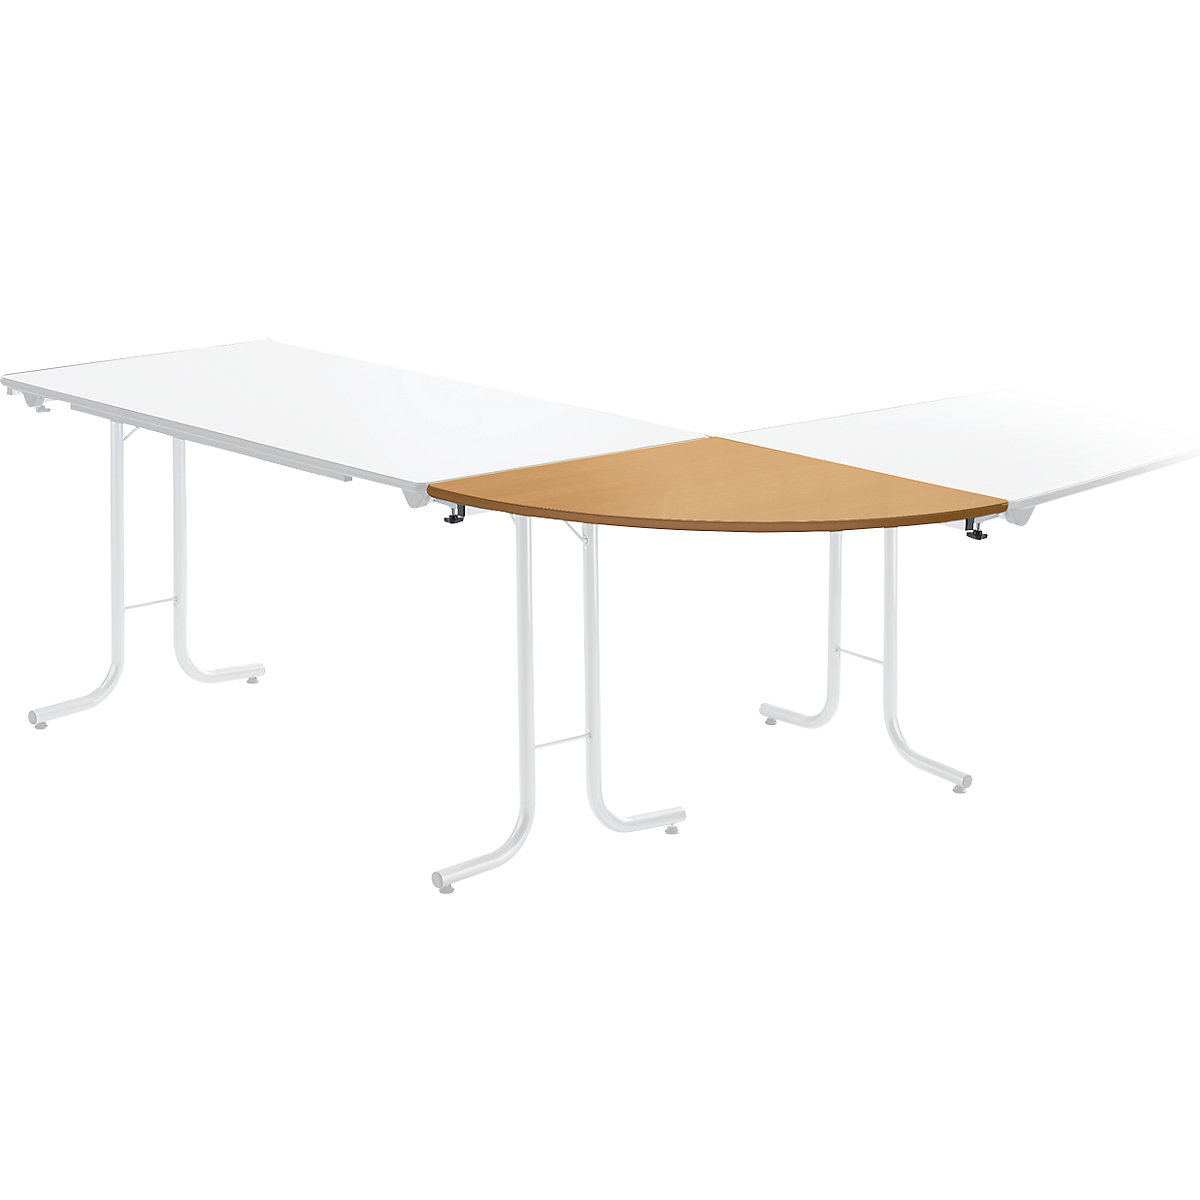 Dodatkowy stół do stołu składanego